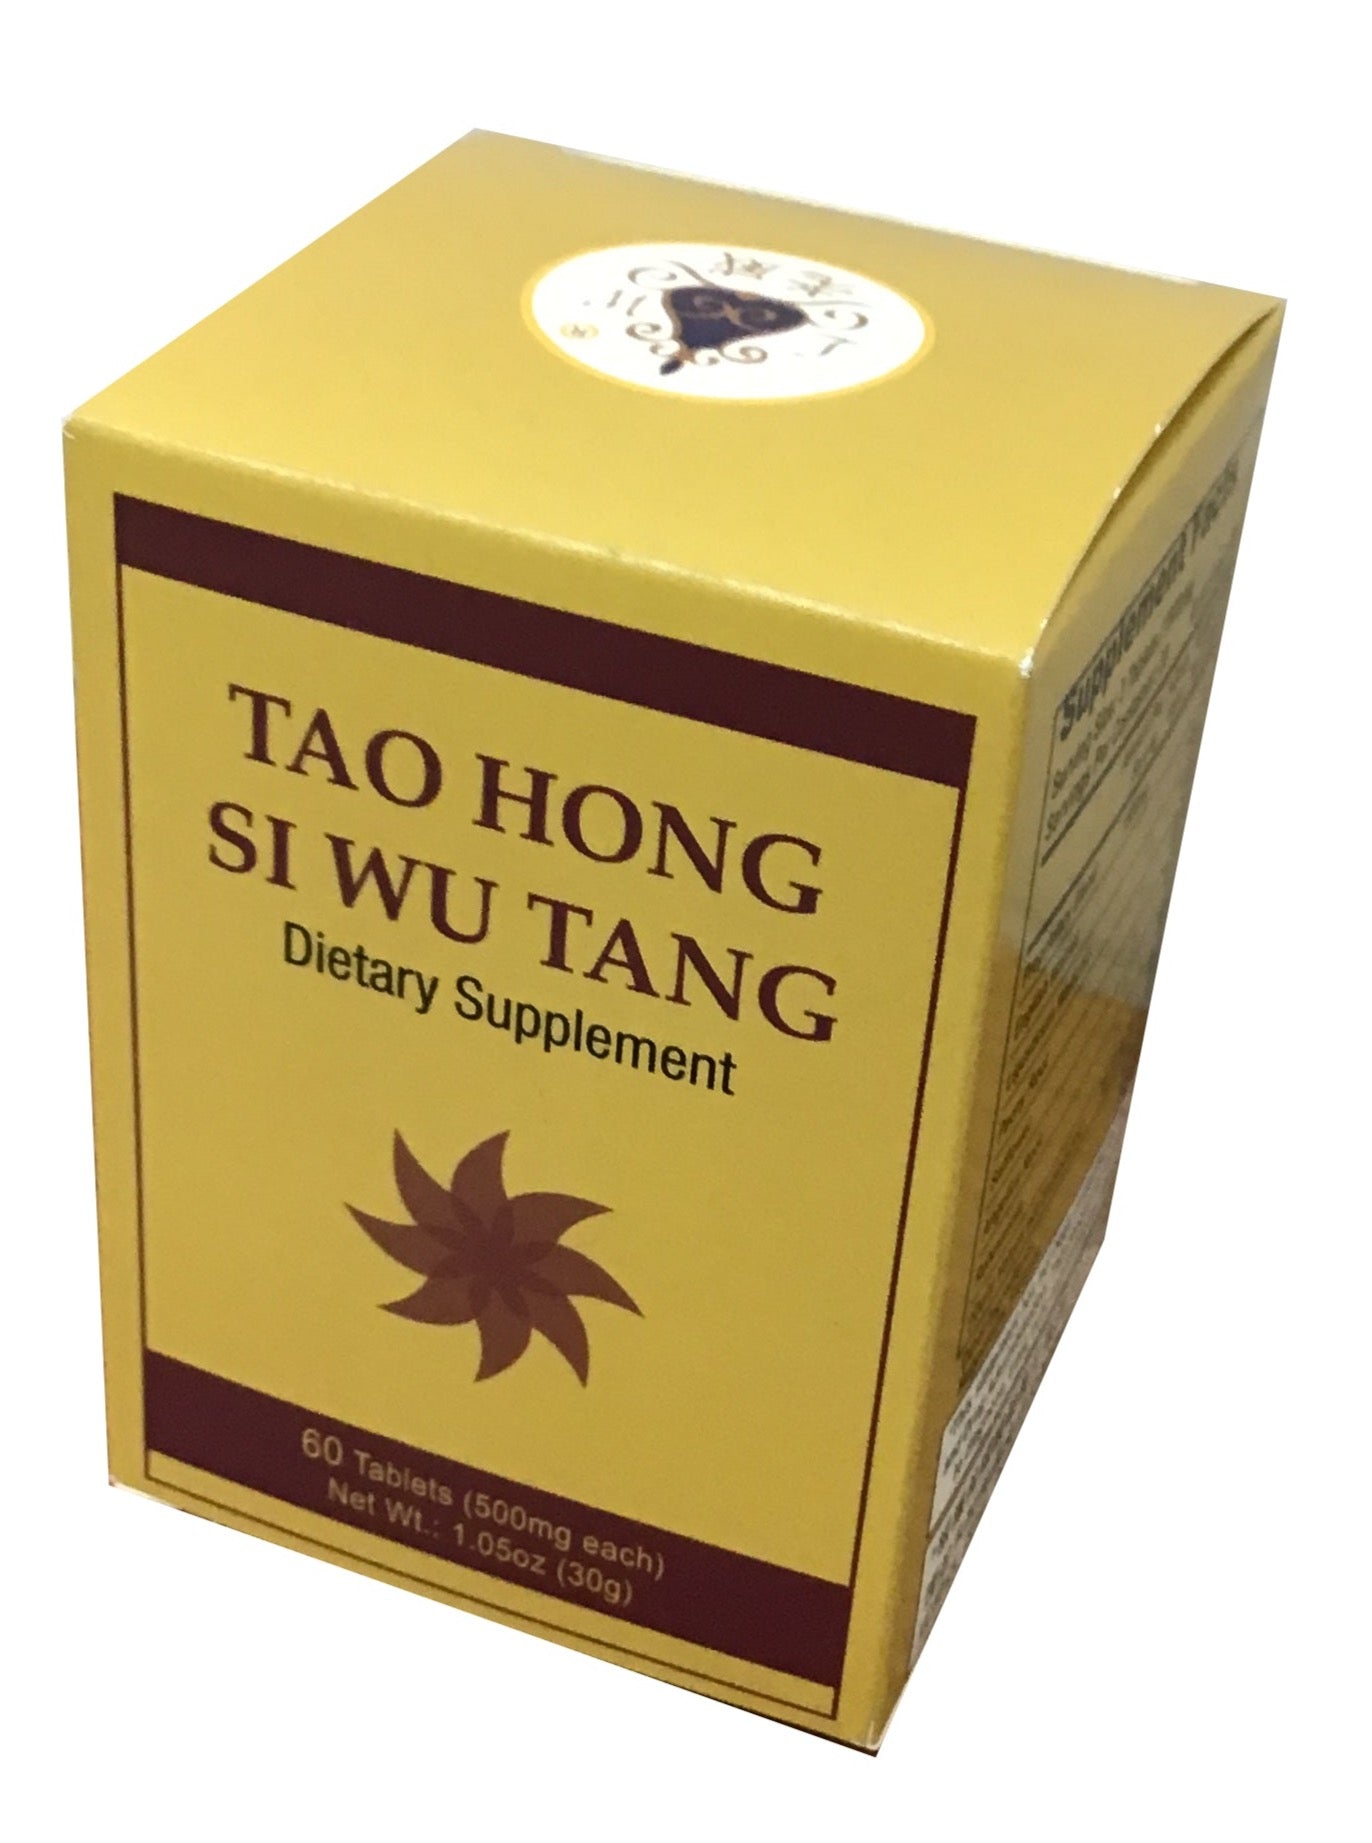 Tao Hong Si Wu Tang (60 Tablets) 老威牌 桃紅四物湯(60片装)